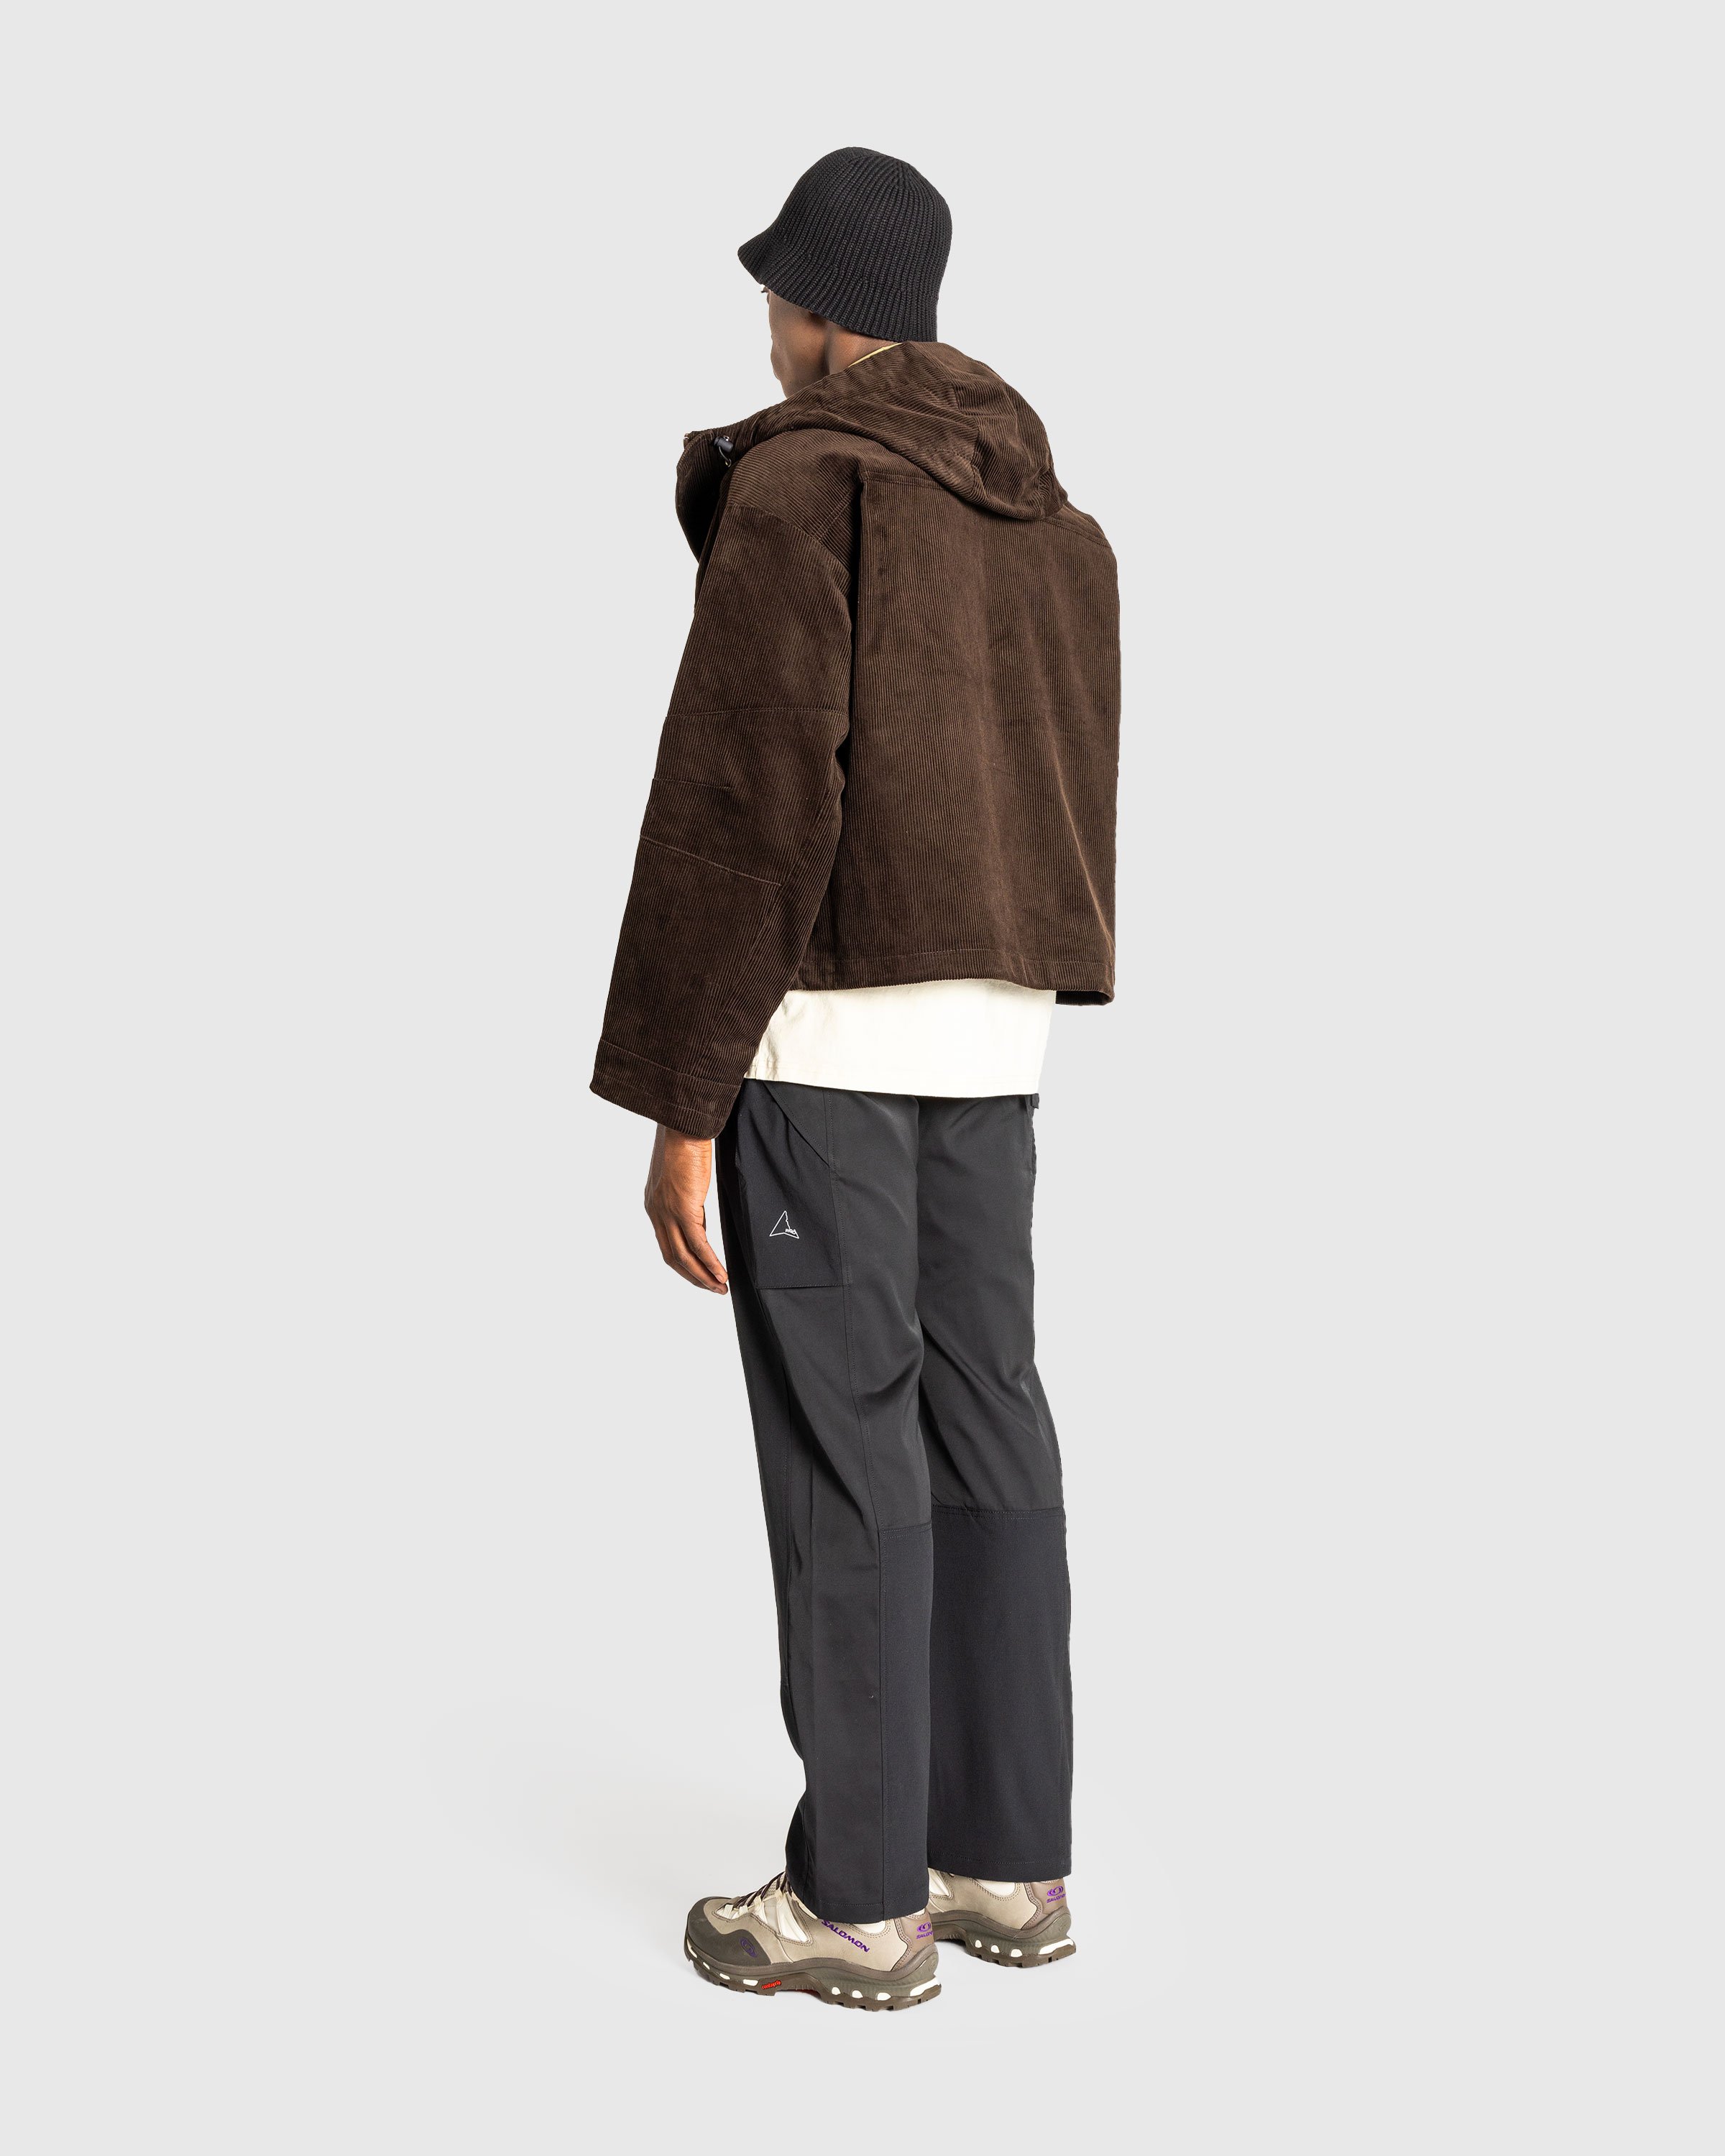 ROA - Corduroy Jacket Olive Drab - Clothing -  - Image 4